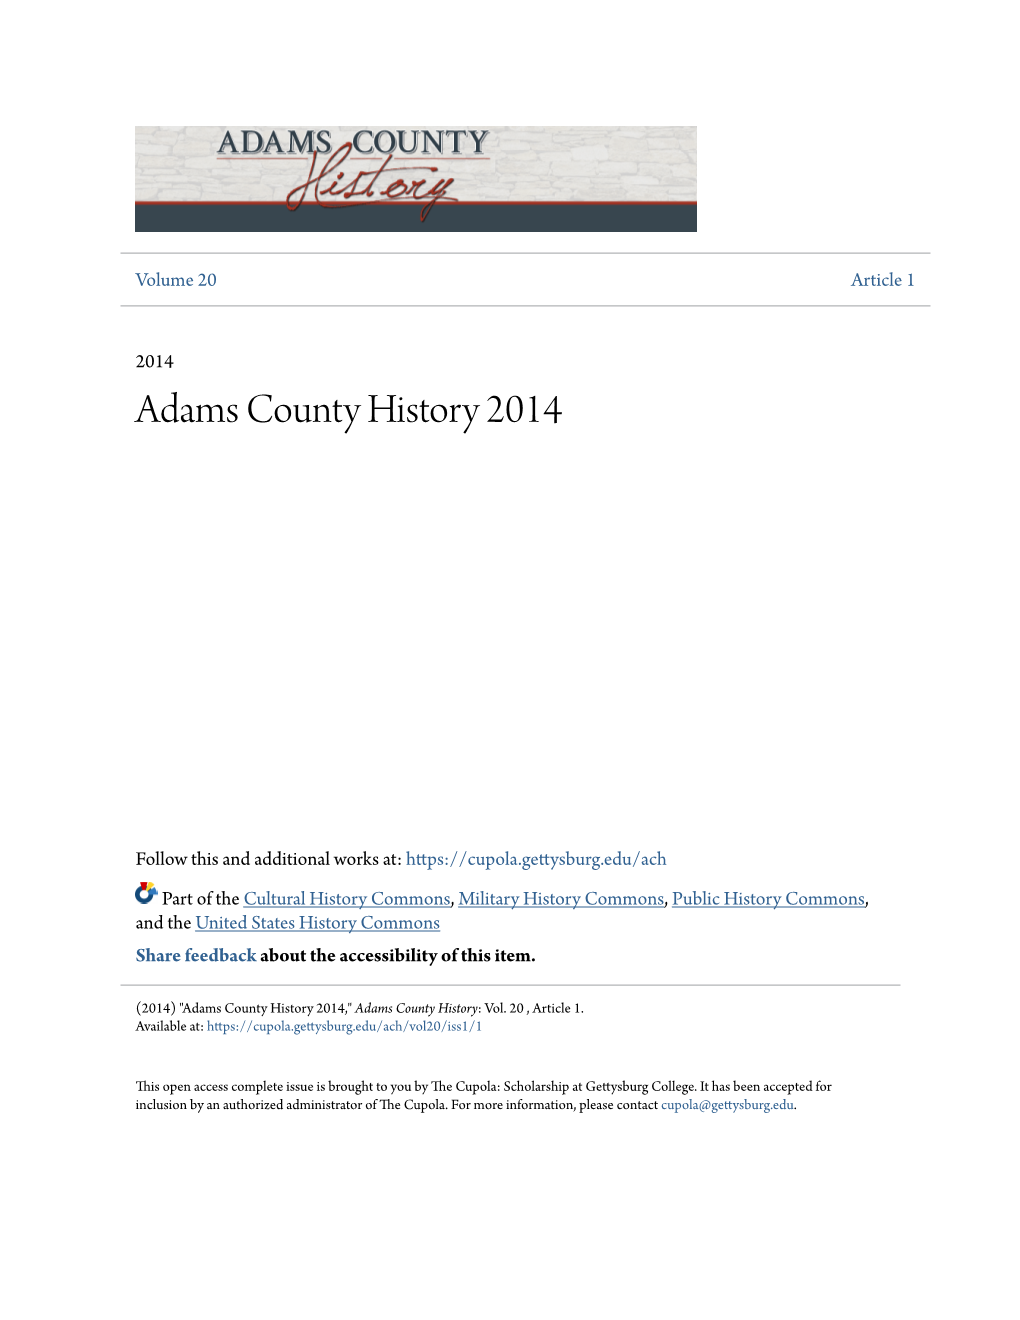 Adams County History 2014